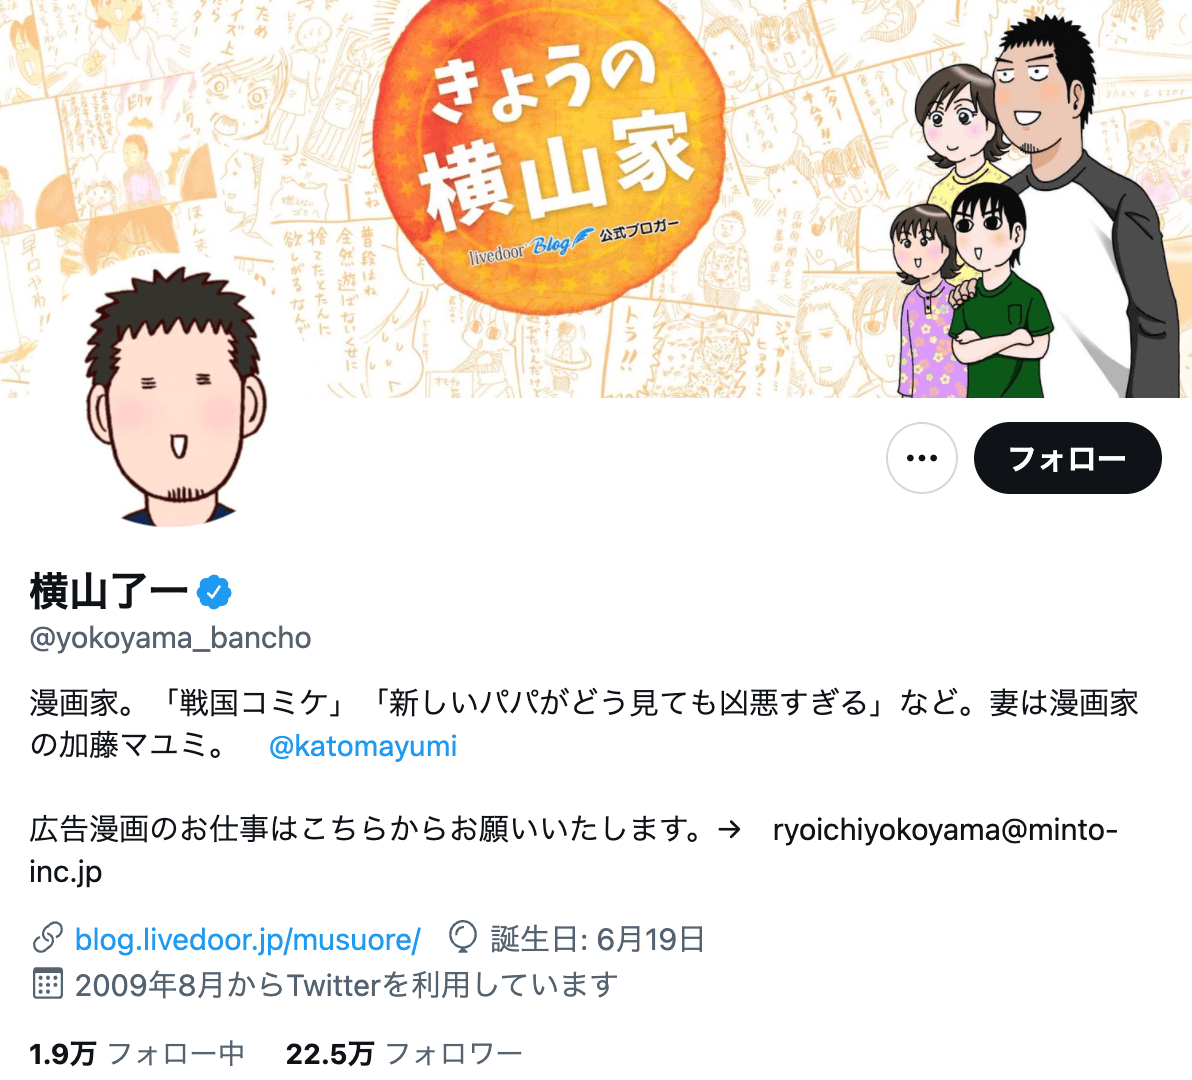 twitter-influencer-comic-yokoyama_bancho